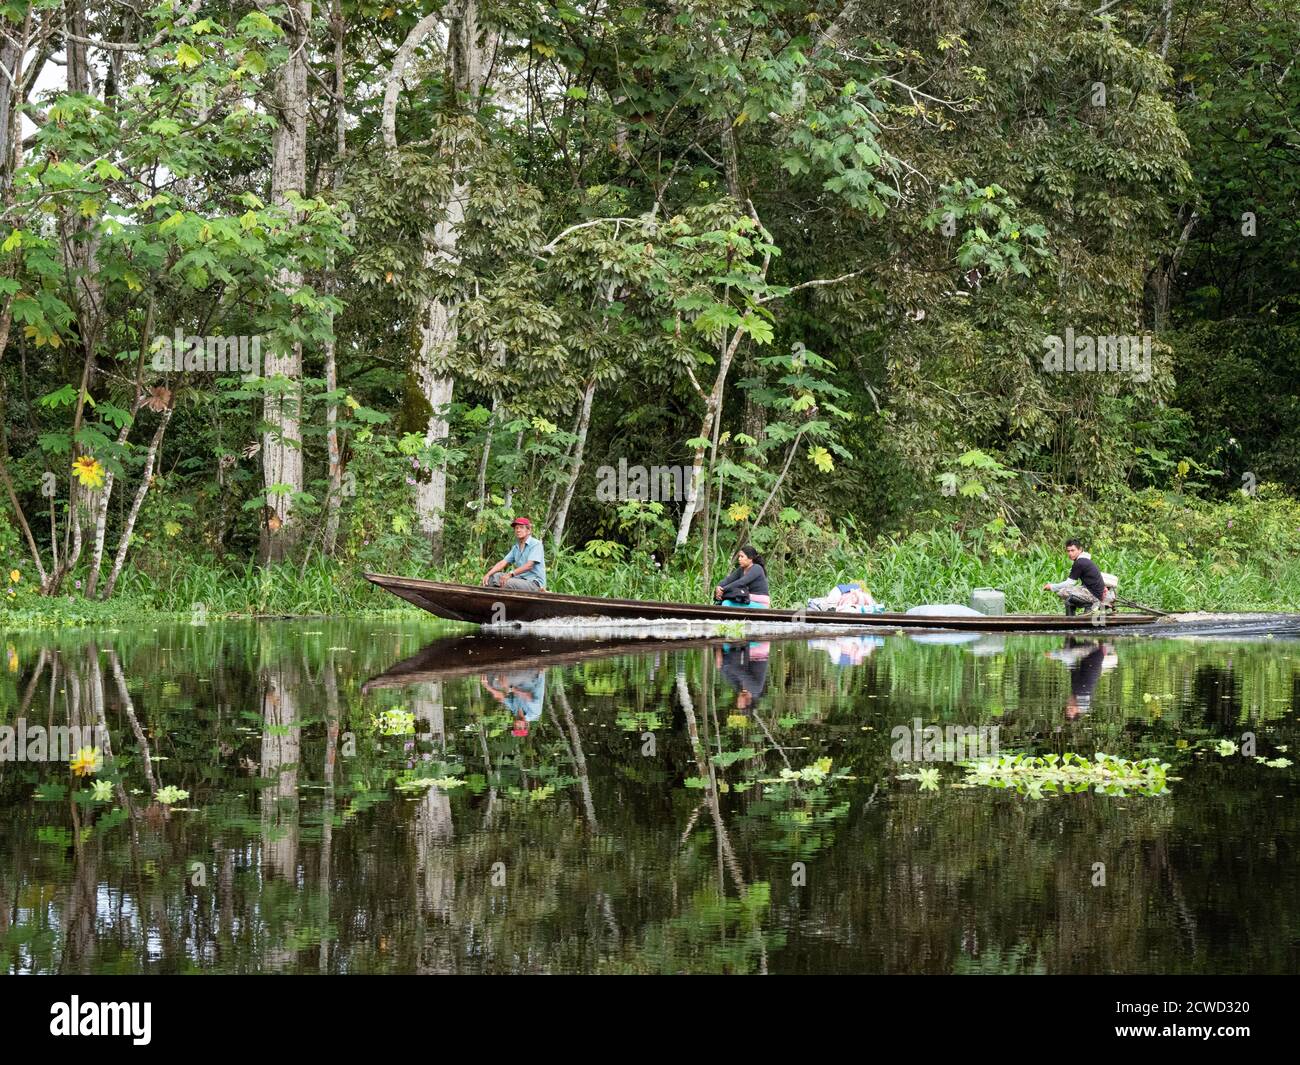 Amazon family canoe immagini e fotografie stock ad alta risoluzione - Alamy